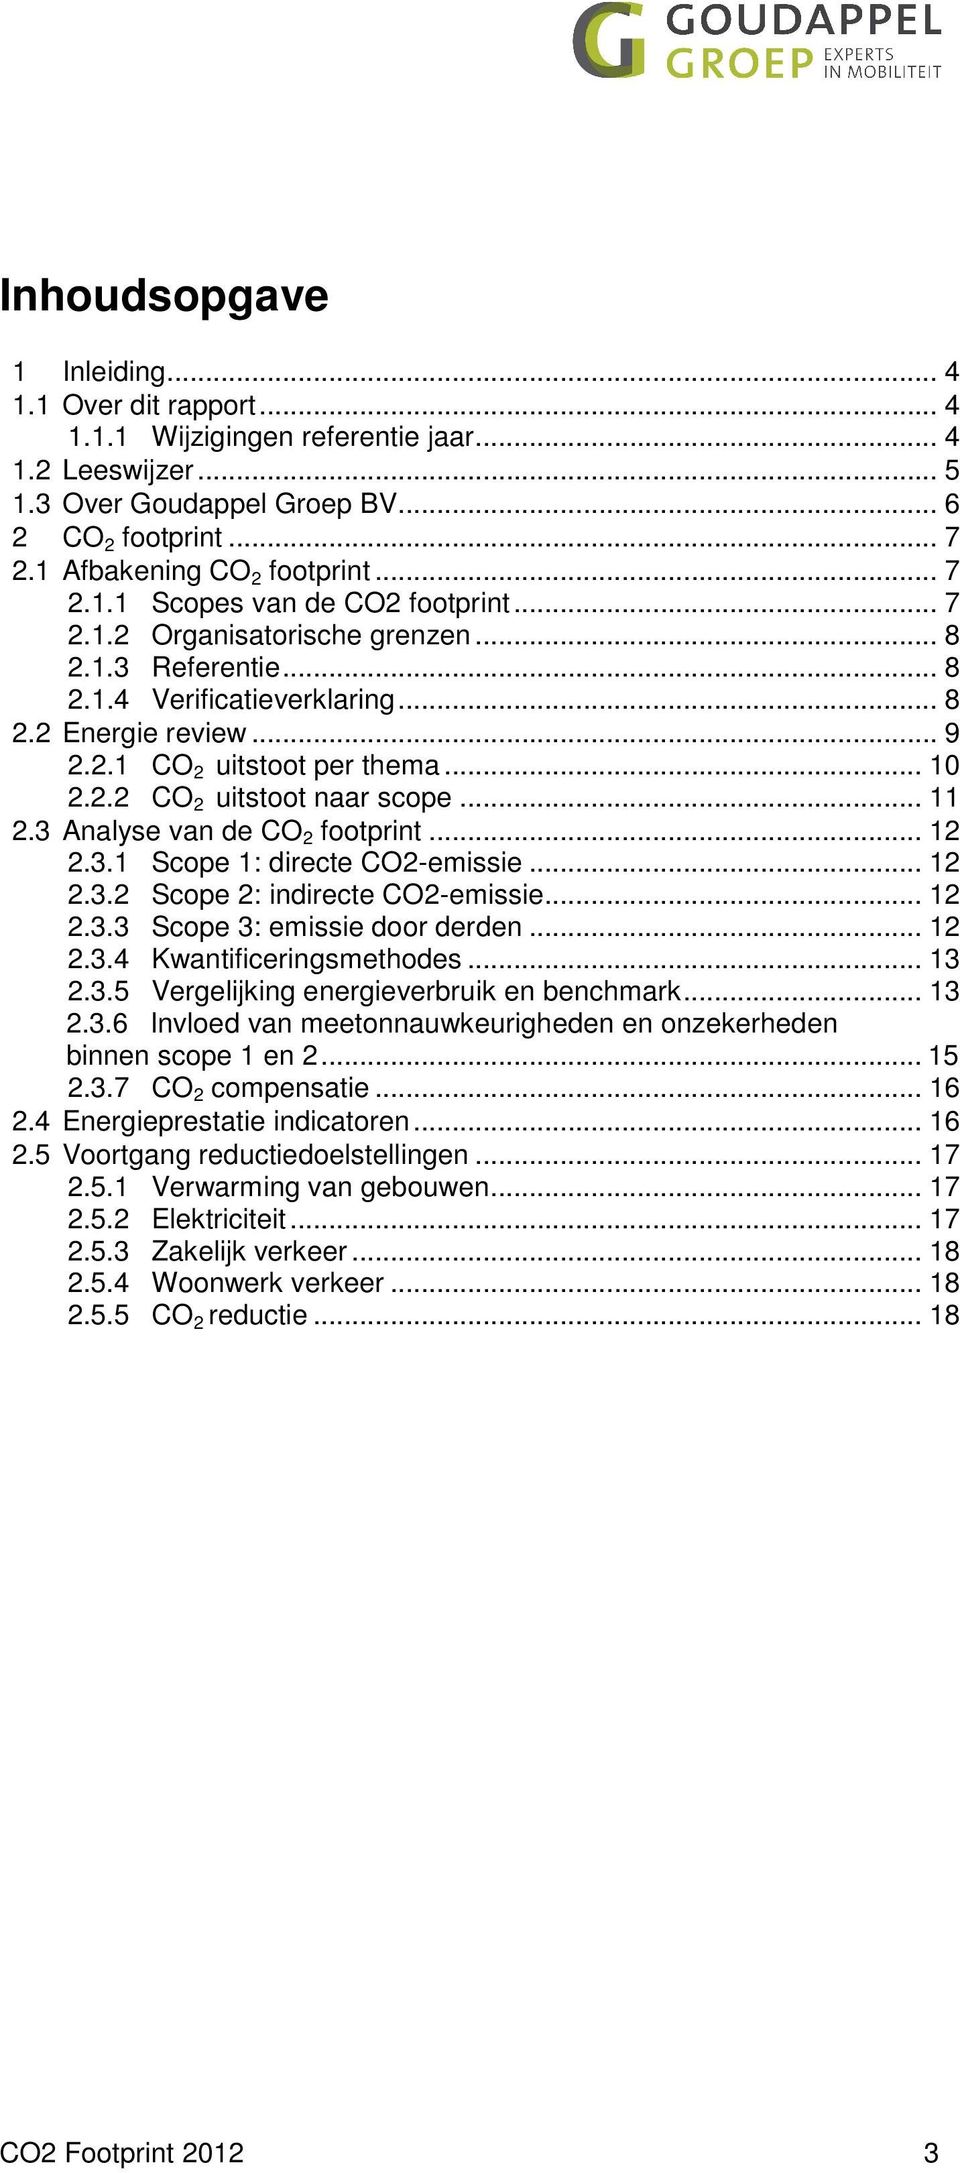 .. 10 2.2.2 CO 2 uitstoot naar scope... 11 2.3 Analyse van de CO 2 footprint... 12 2.3.1 Scope 1: directe CO2-emissie... 12 2.3.2 Scope 2: indirecte CO2-emissie... 12 2.3.3 Scope 3: emissie door derden.